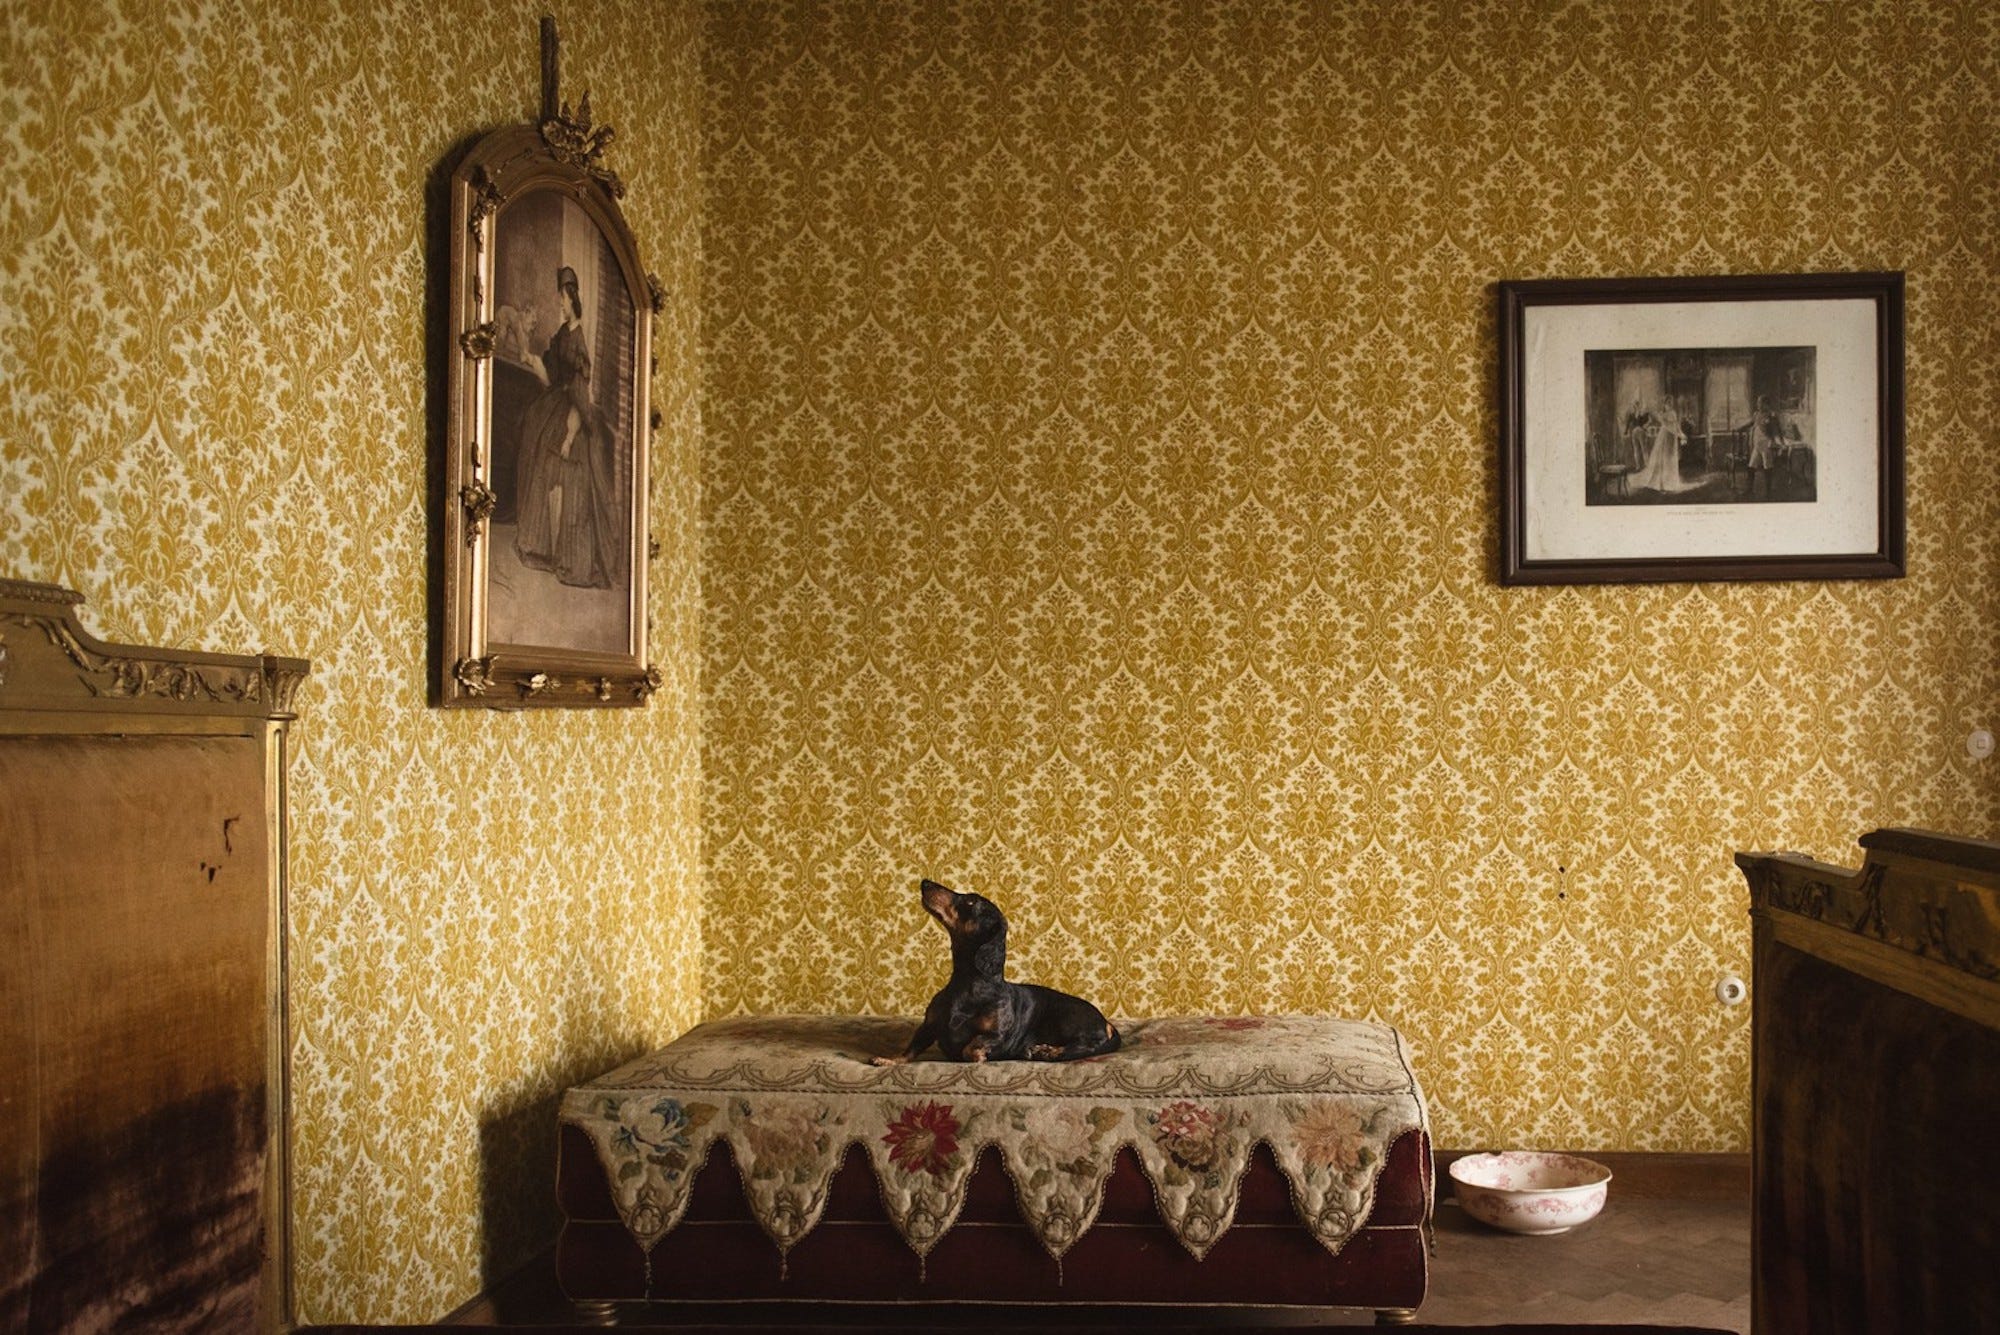 Ein Dackel sitzt auf einem Bett und blickt zu einem Porträt in einem Raum mit gelben Wänden auf.